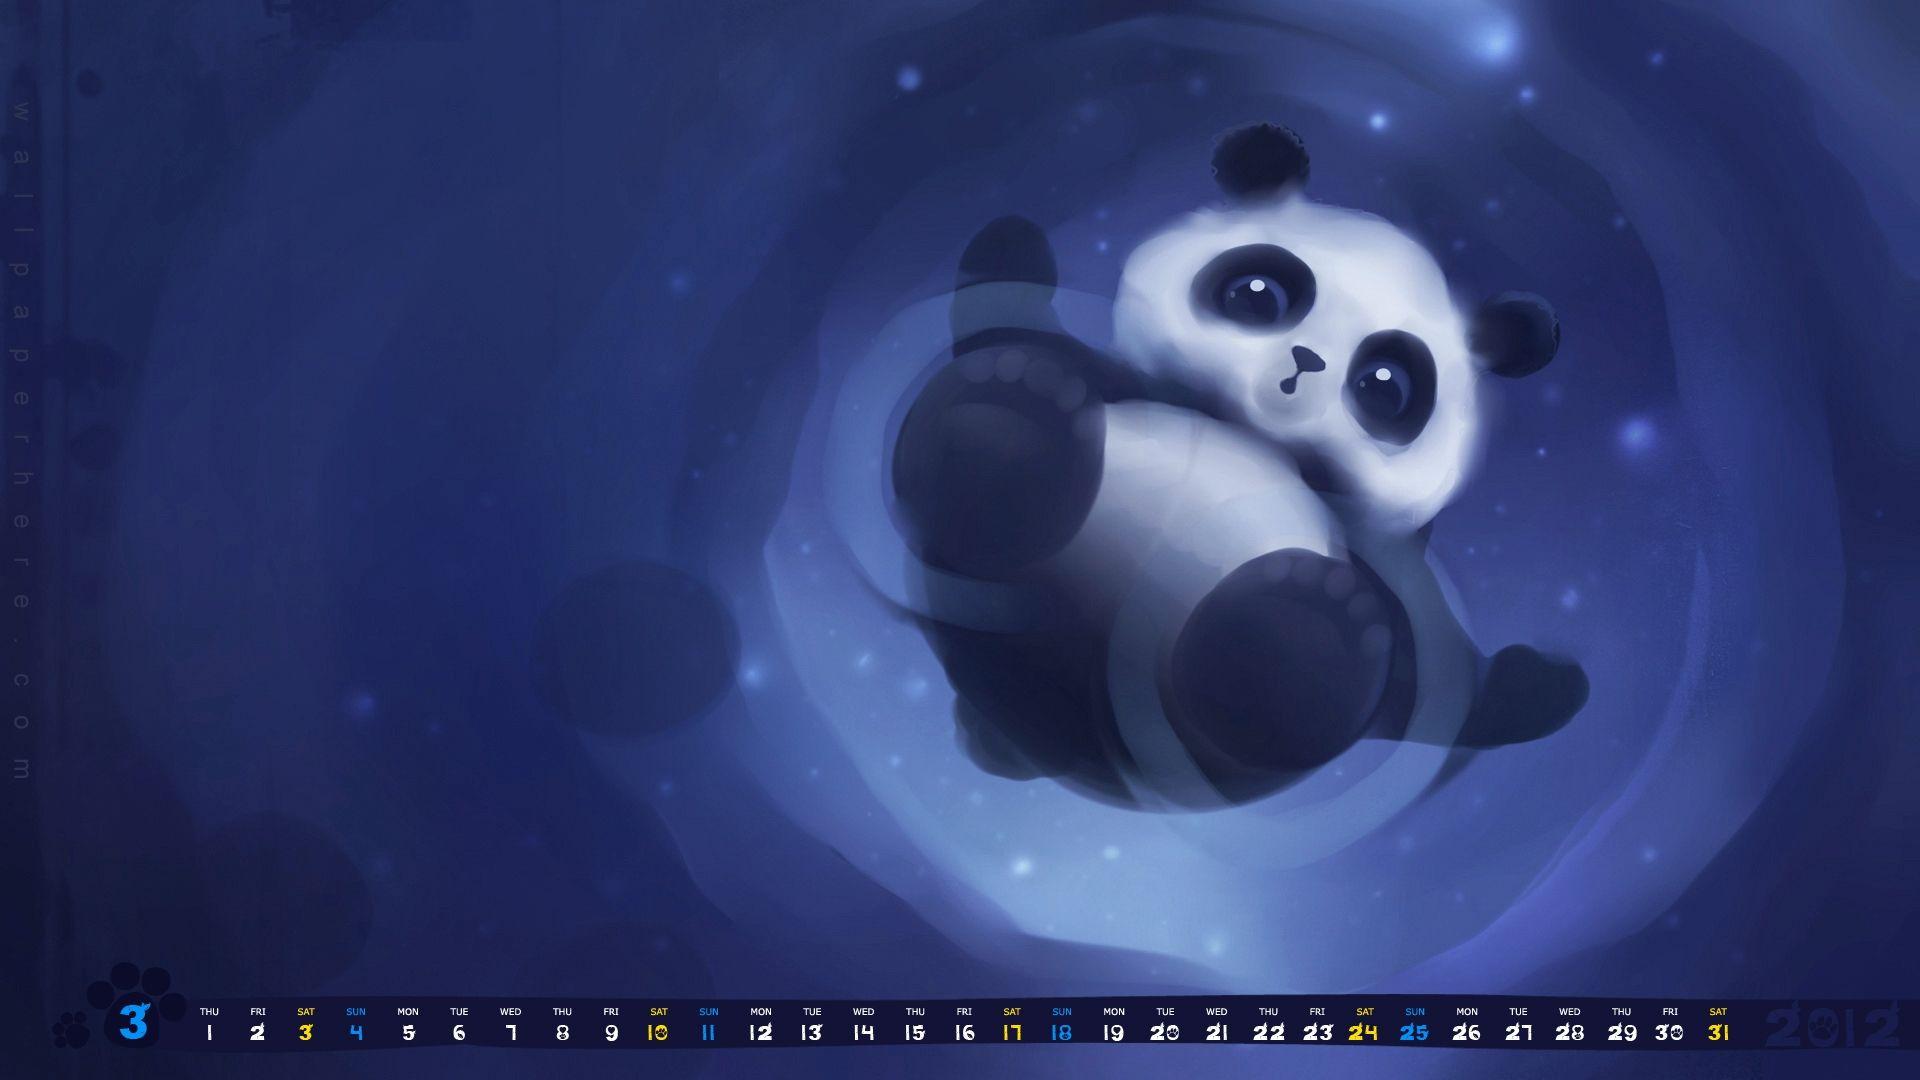 Cute Panda wallpaperx1080